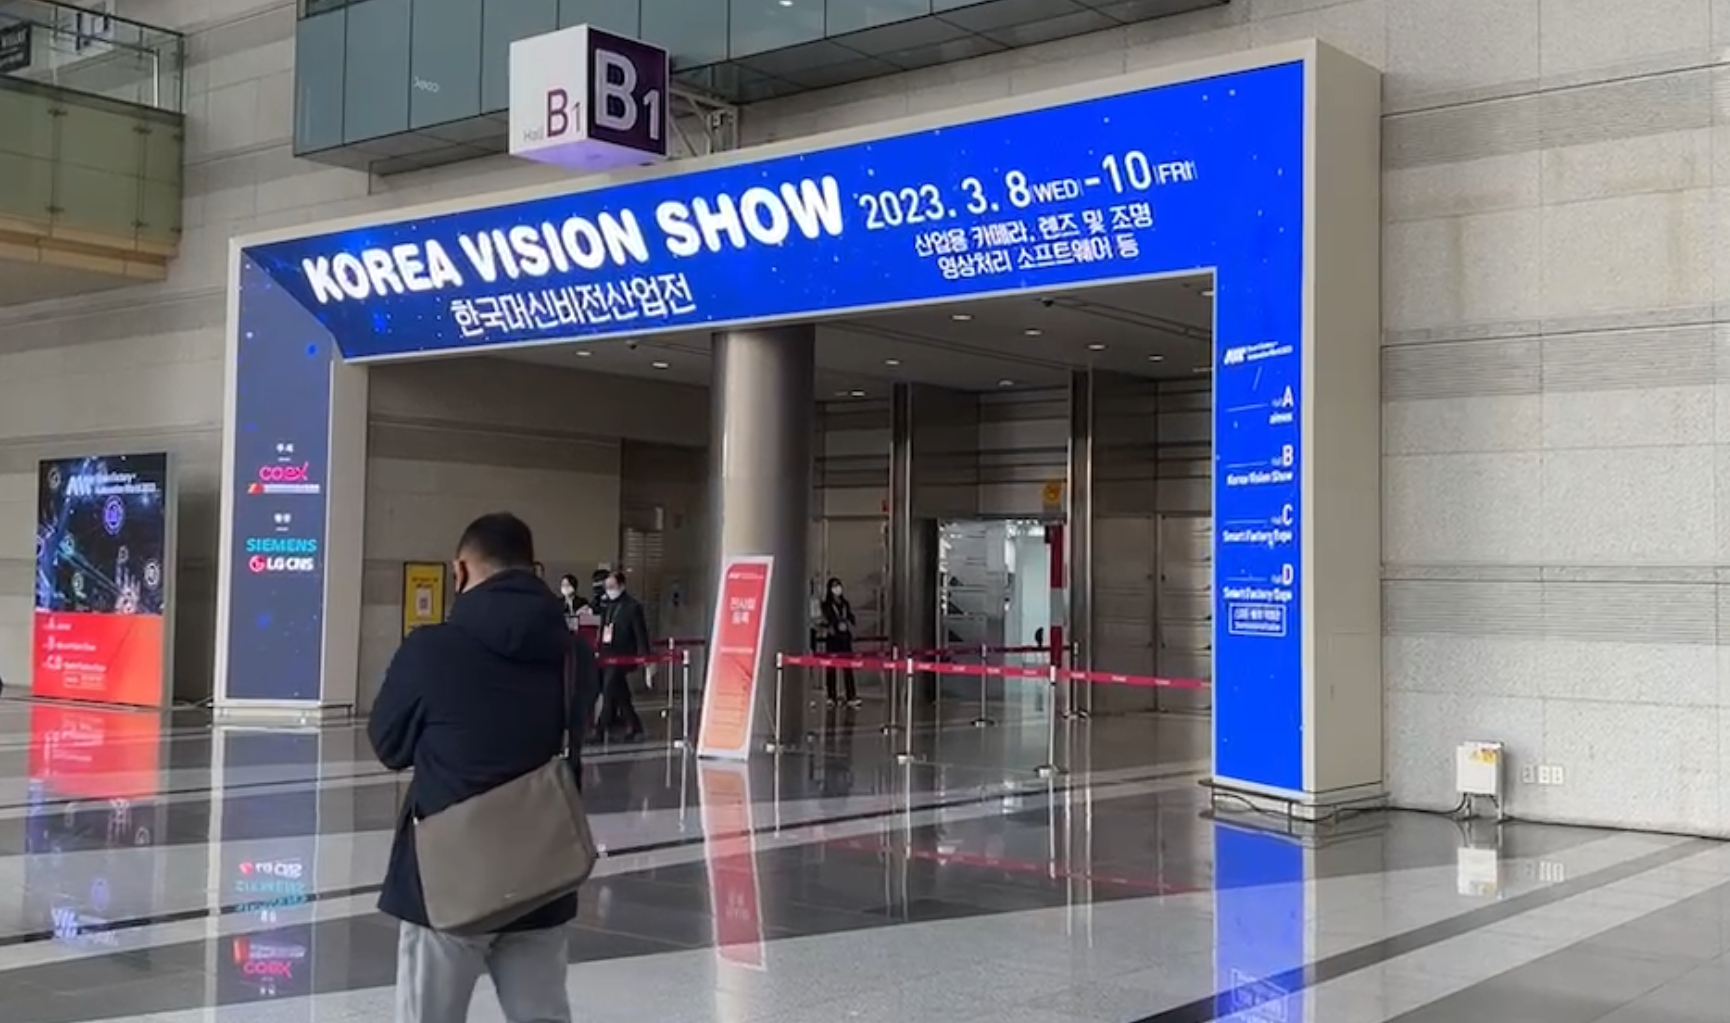 Korea Vision Show